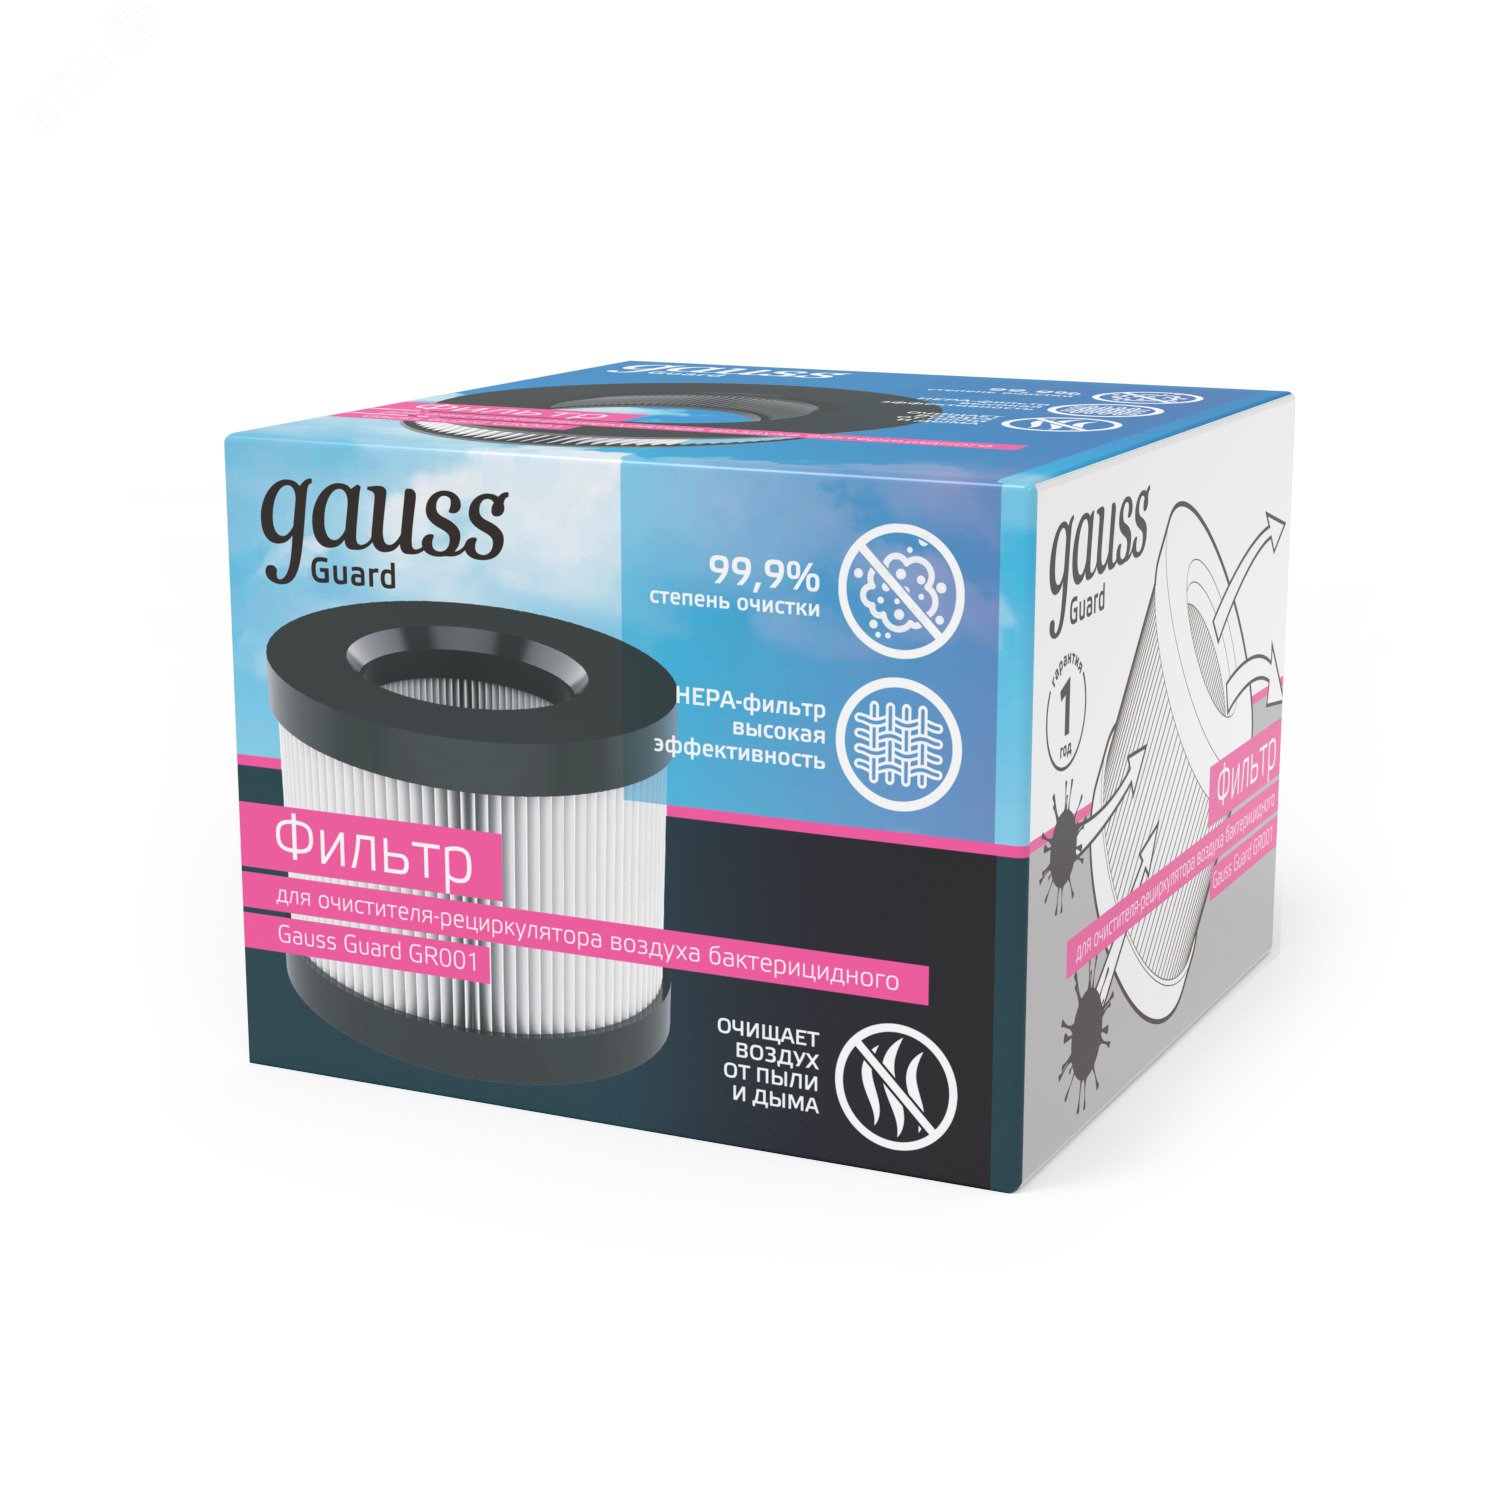 Фильтр для очистителя (рециркулятора) воздуха с ультрафиолетовым излучением антибактериального GR001 Guard Gauss GR002 GAUSS - превью 5